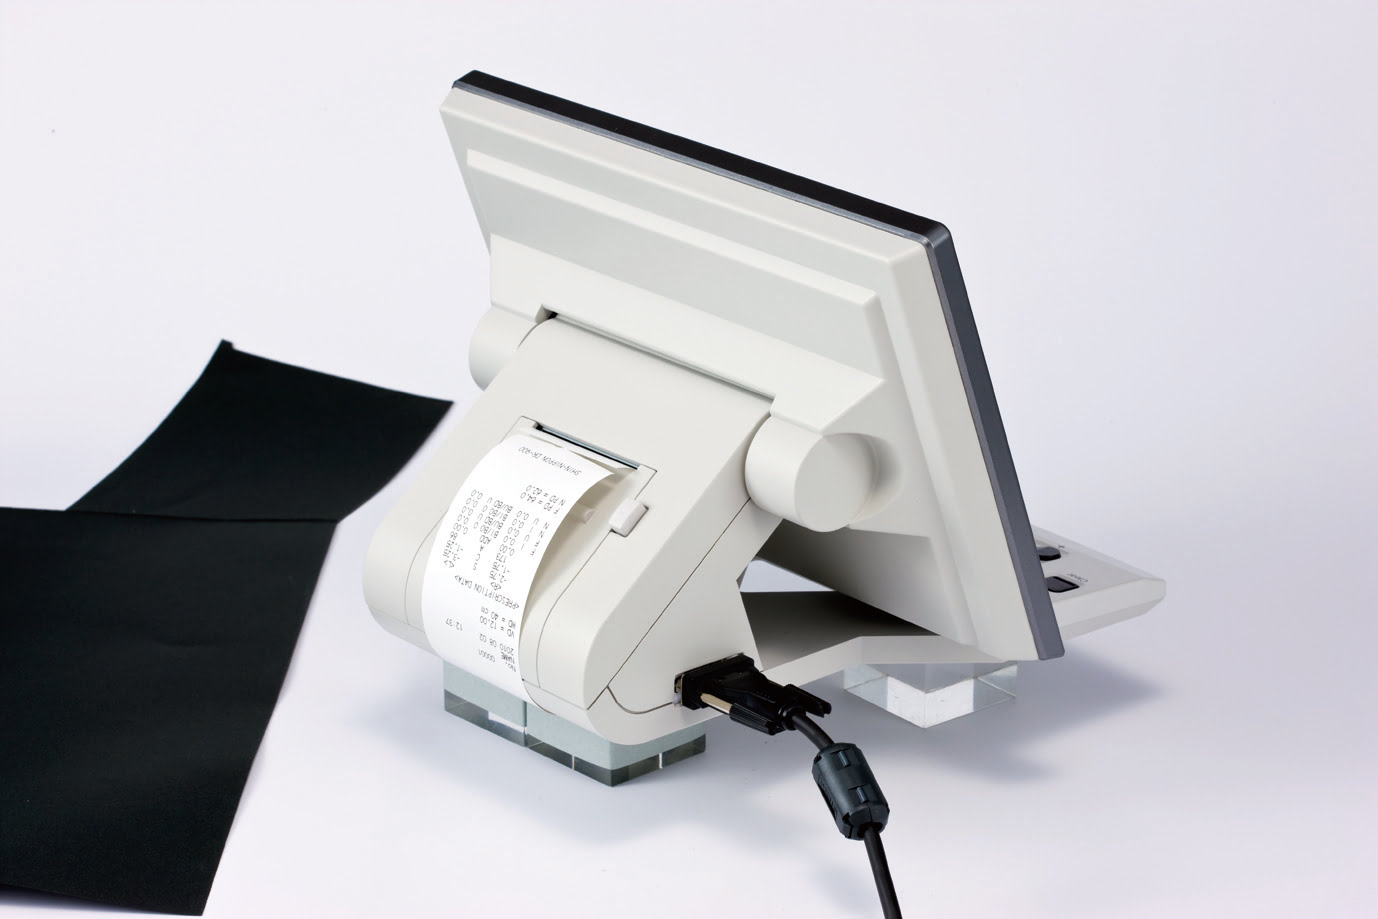 Kompaktowy design i drukarka z systemem odcinania papieru